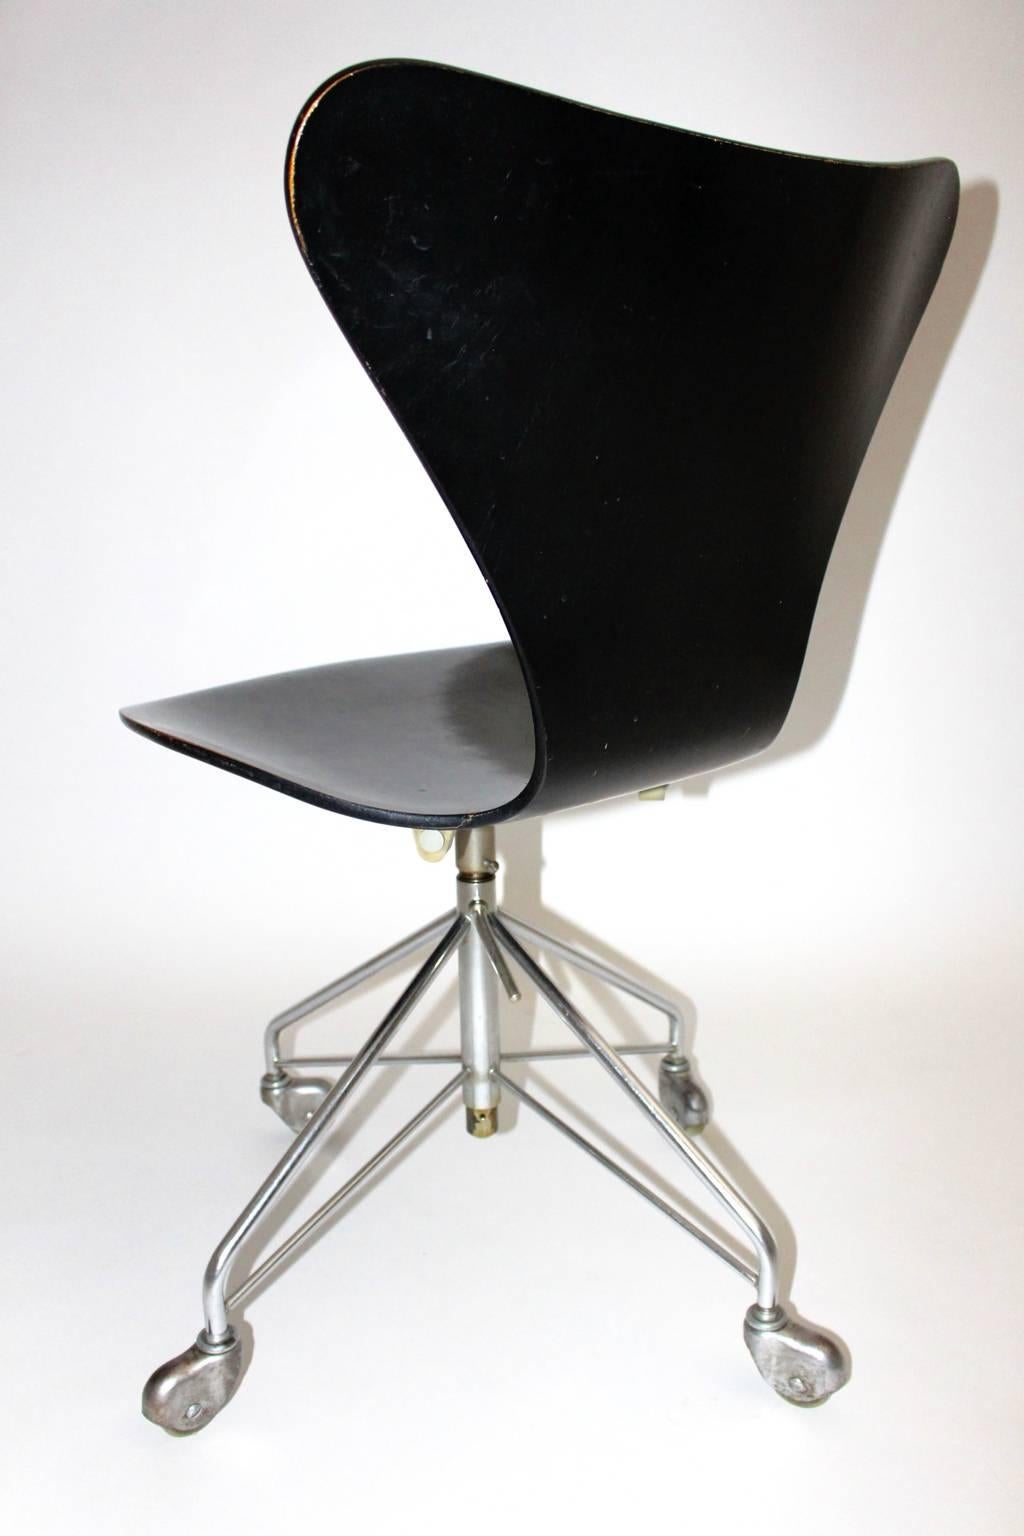 Danish Mid Century Modern Vintage Black Office Chair by Arne Jacobsen 1950s, Denmark For Sale